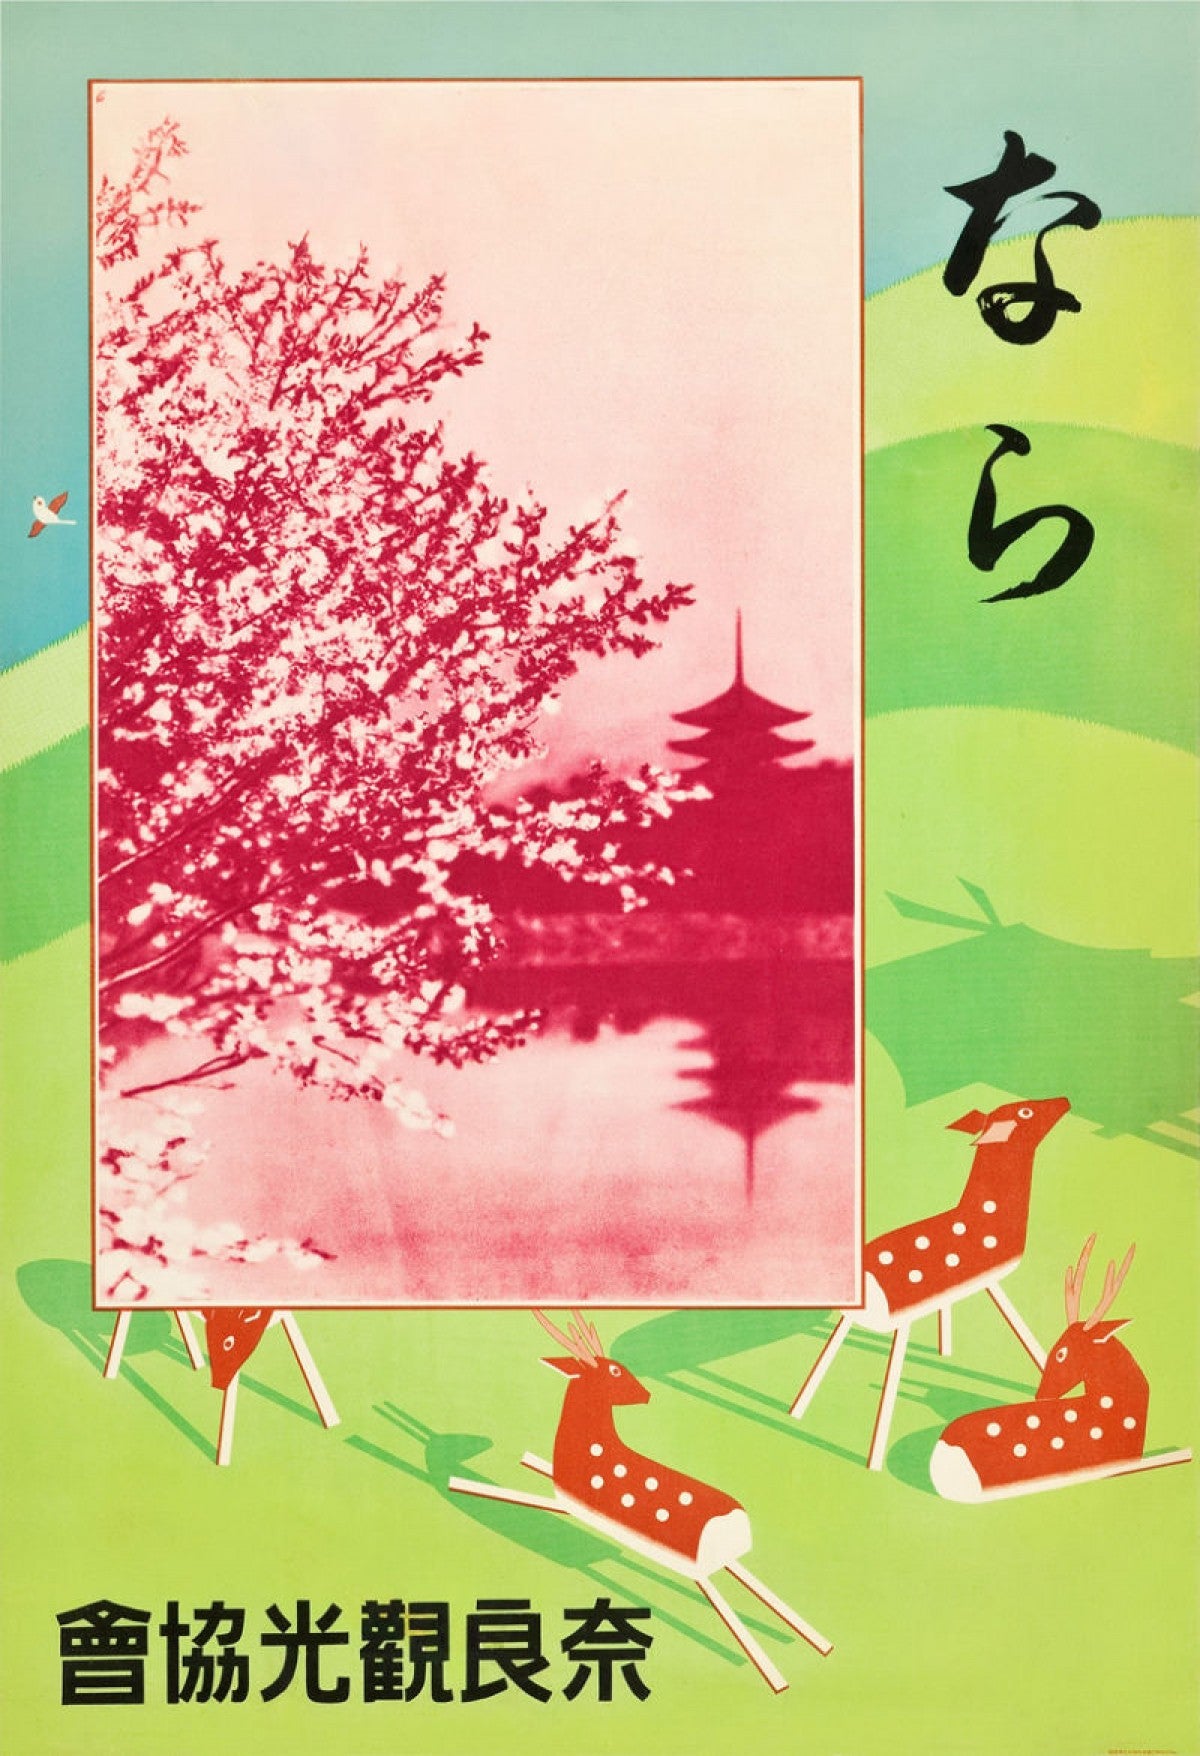 1930 Japan Vintage Travel Poster